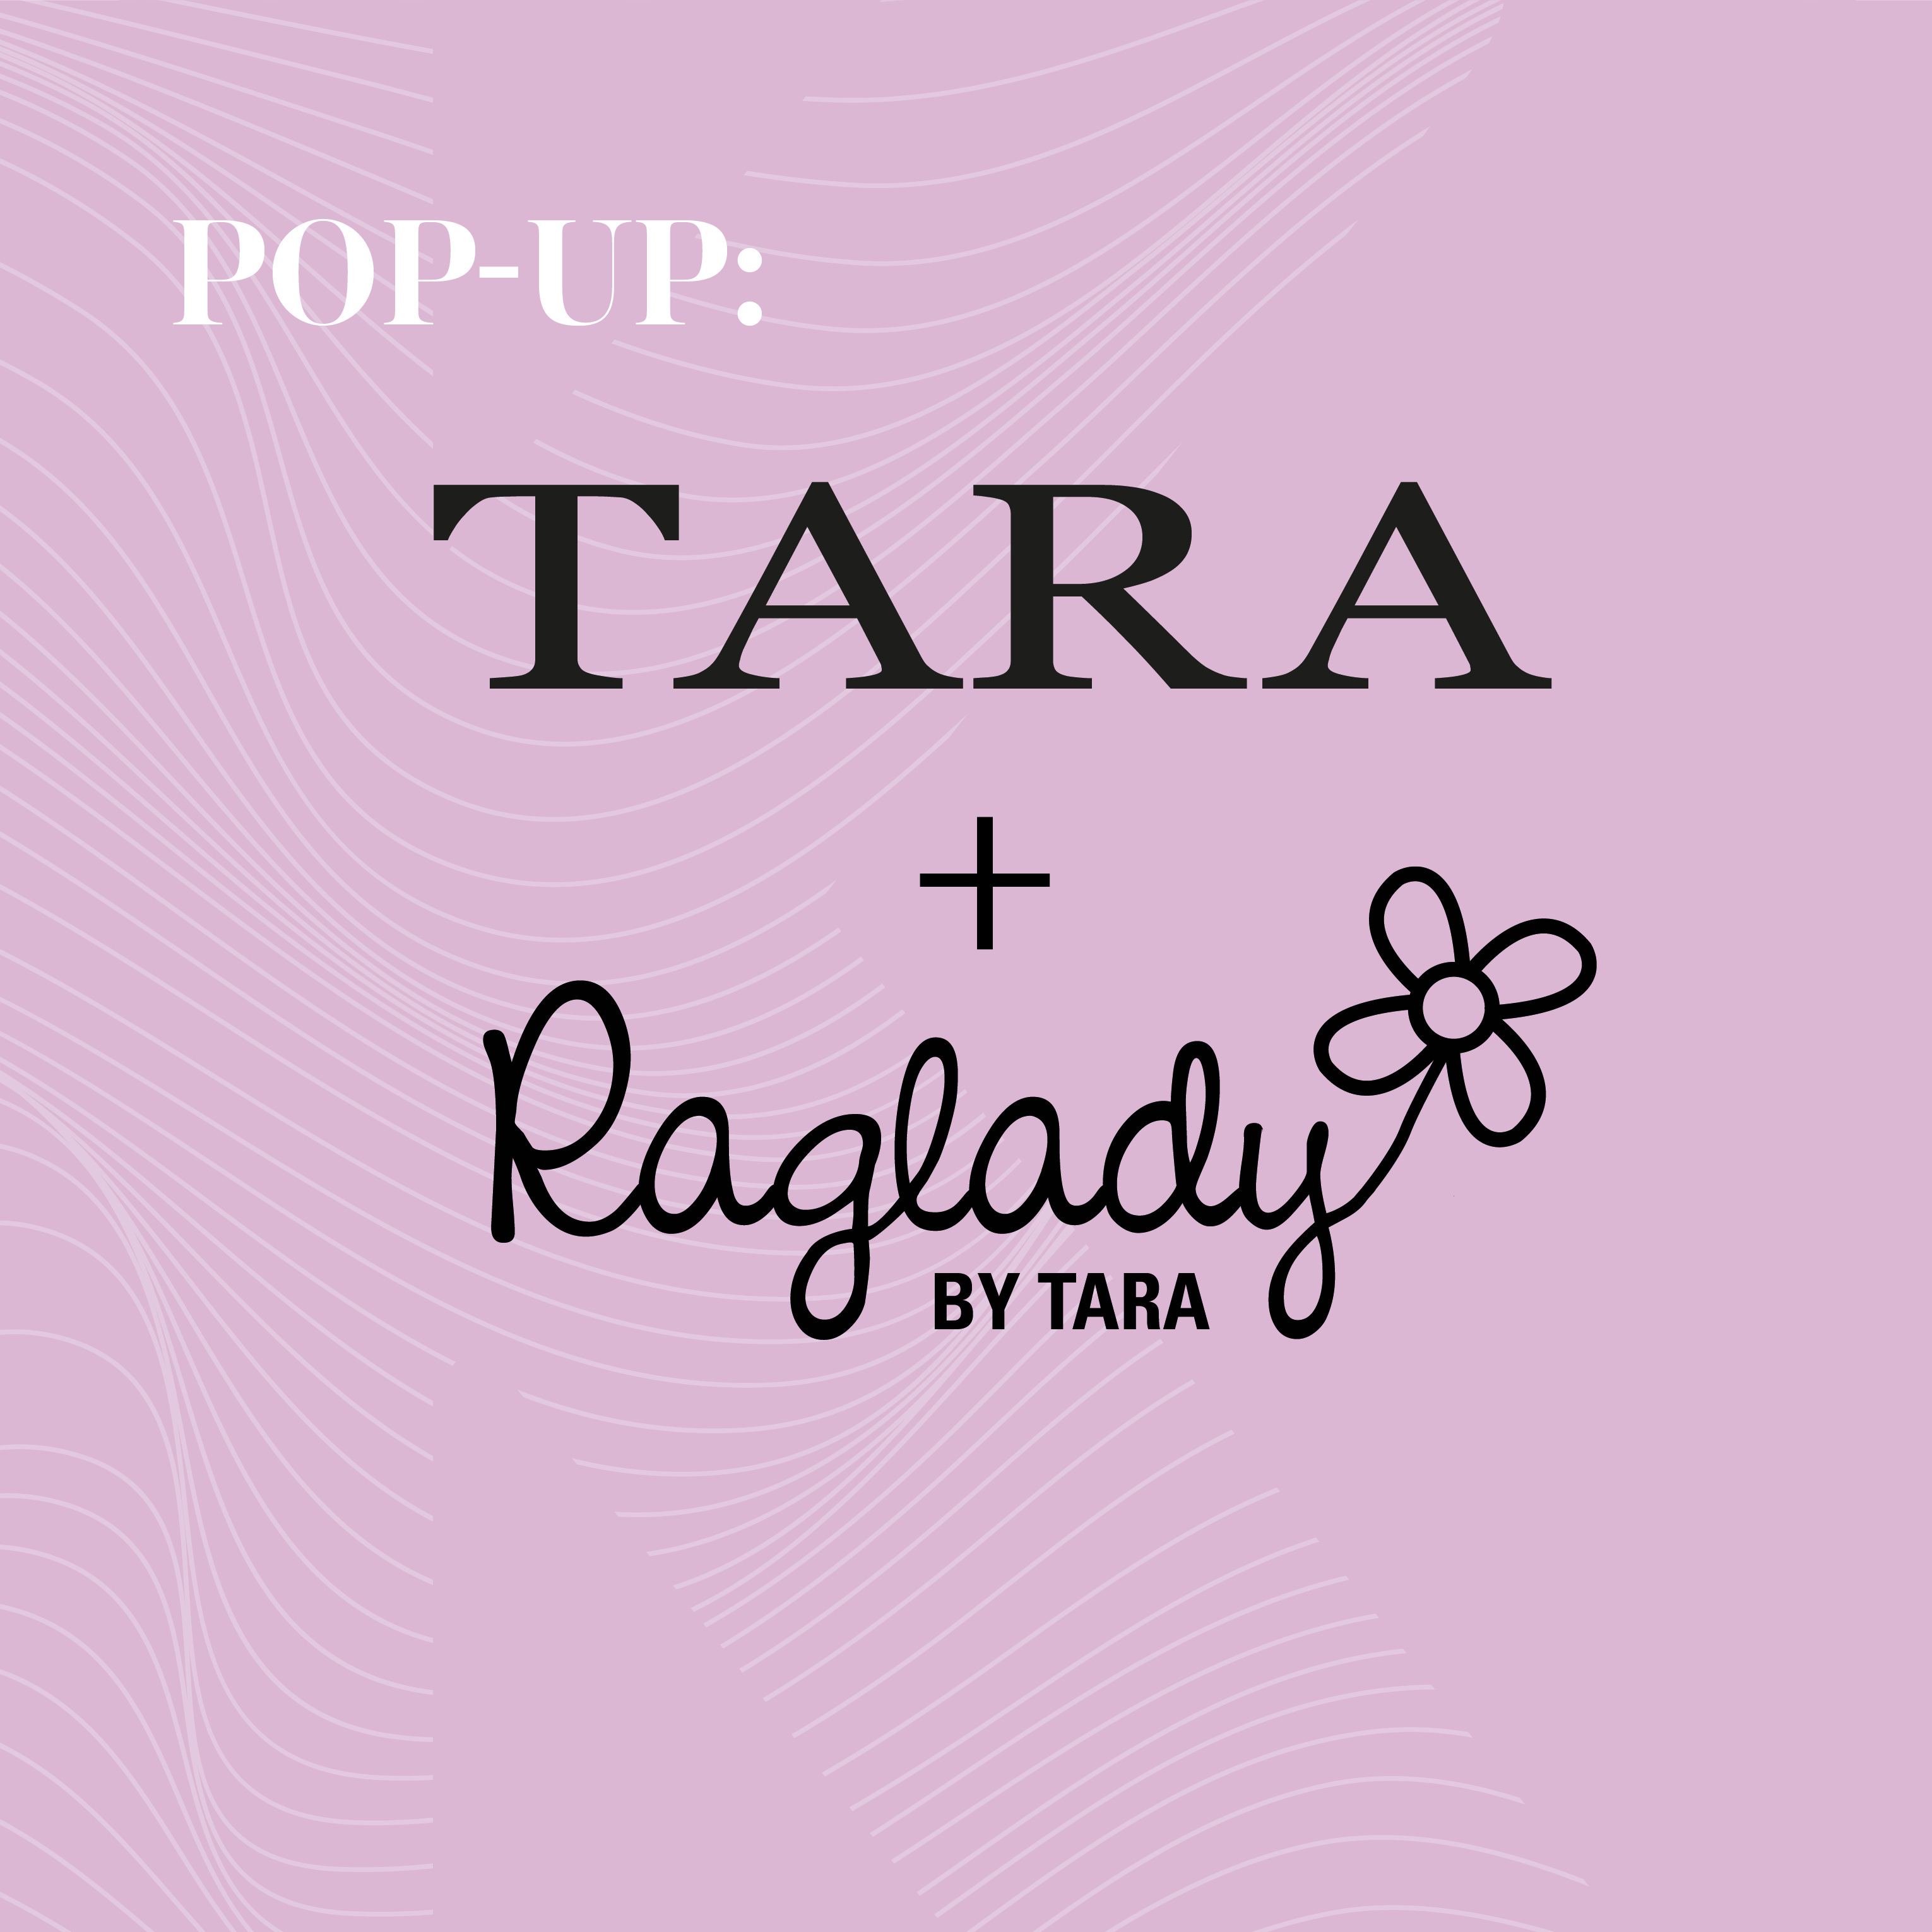 Pop-up med Tara och Raglady by Tara